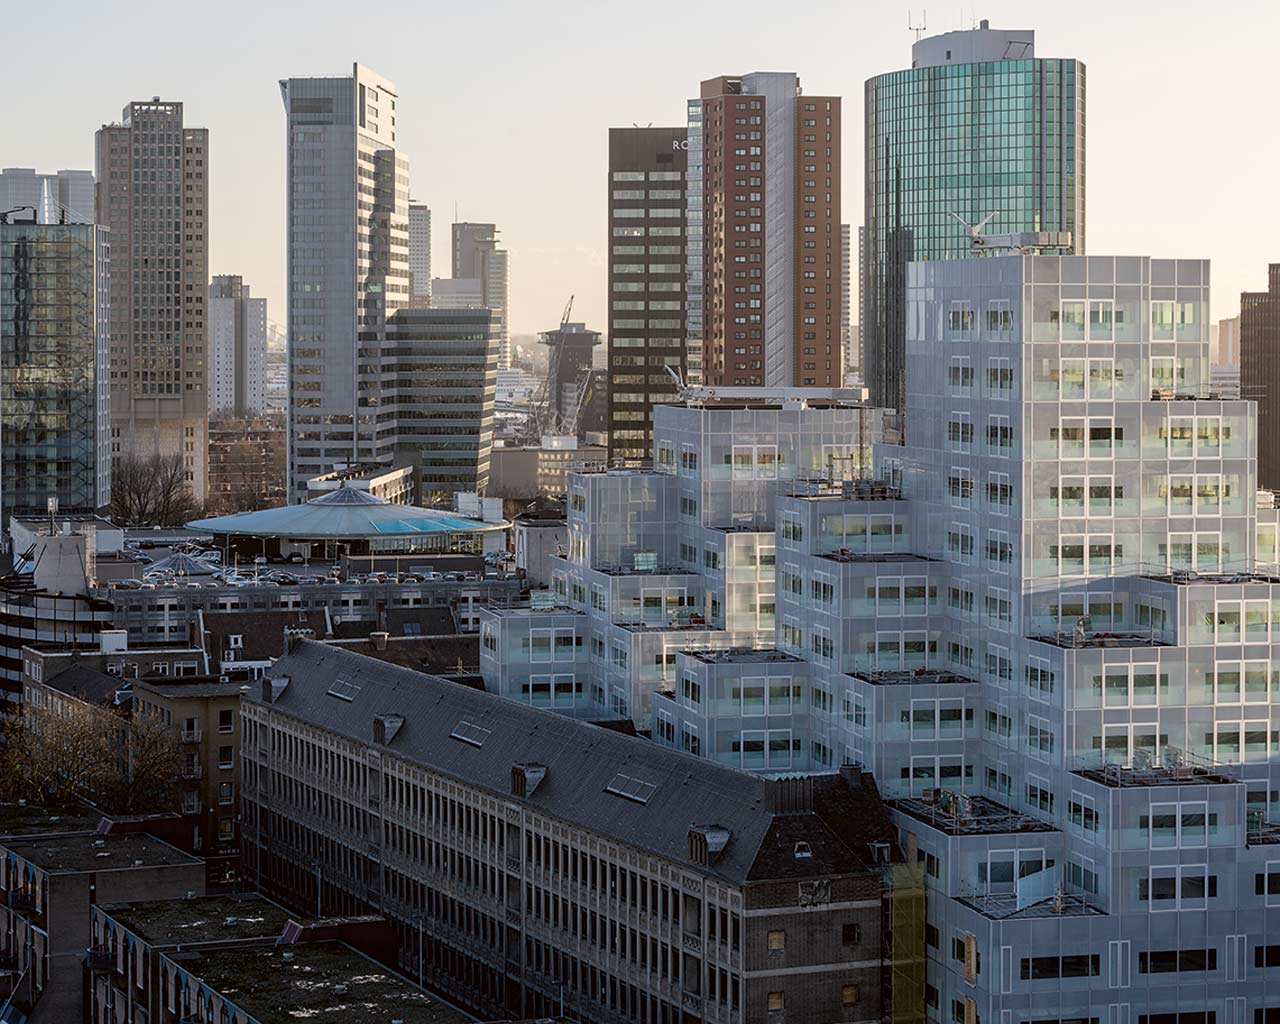 Timmerhuis Rotterdam (NL), 2015. Ph. Ossip van Duivenbode.